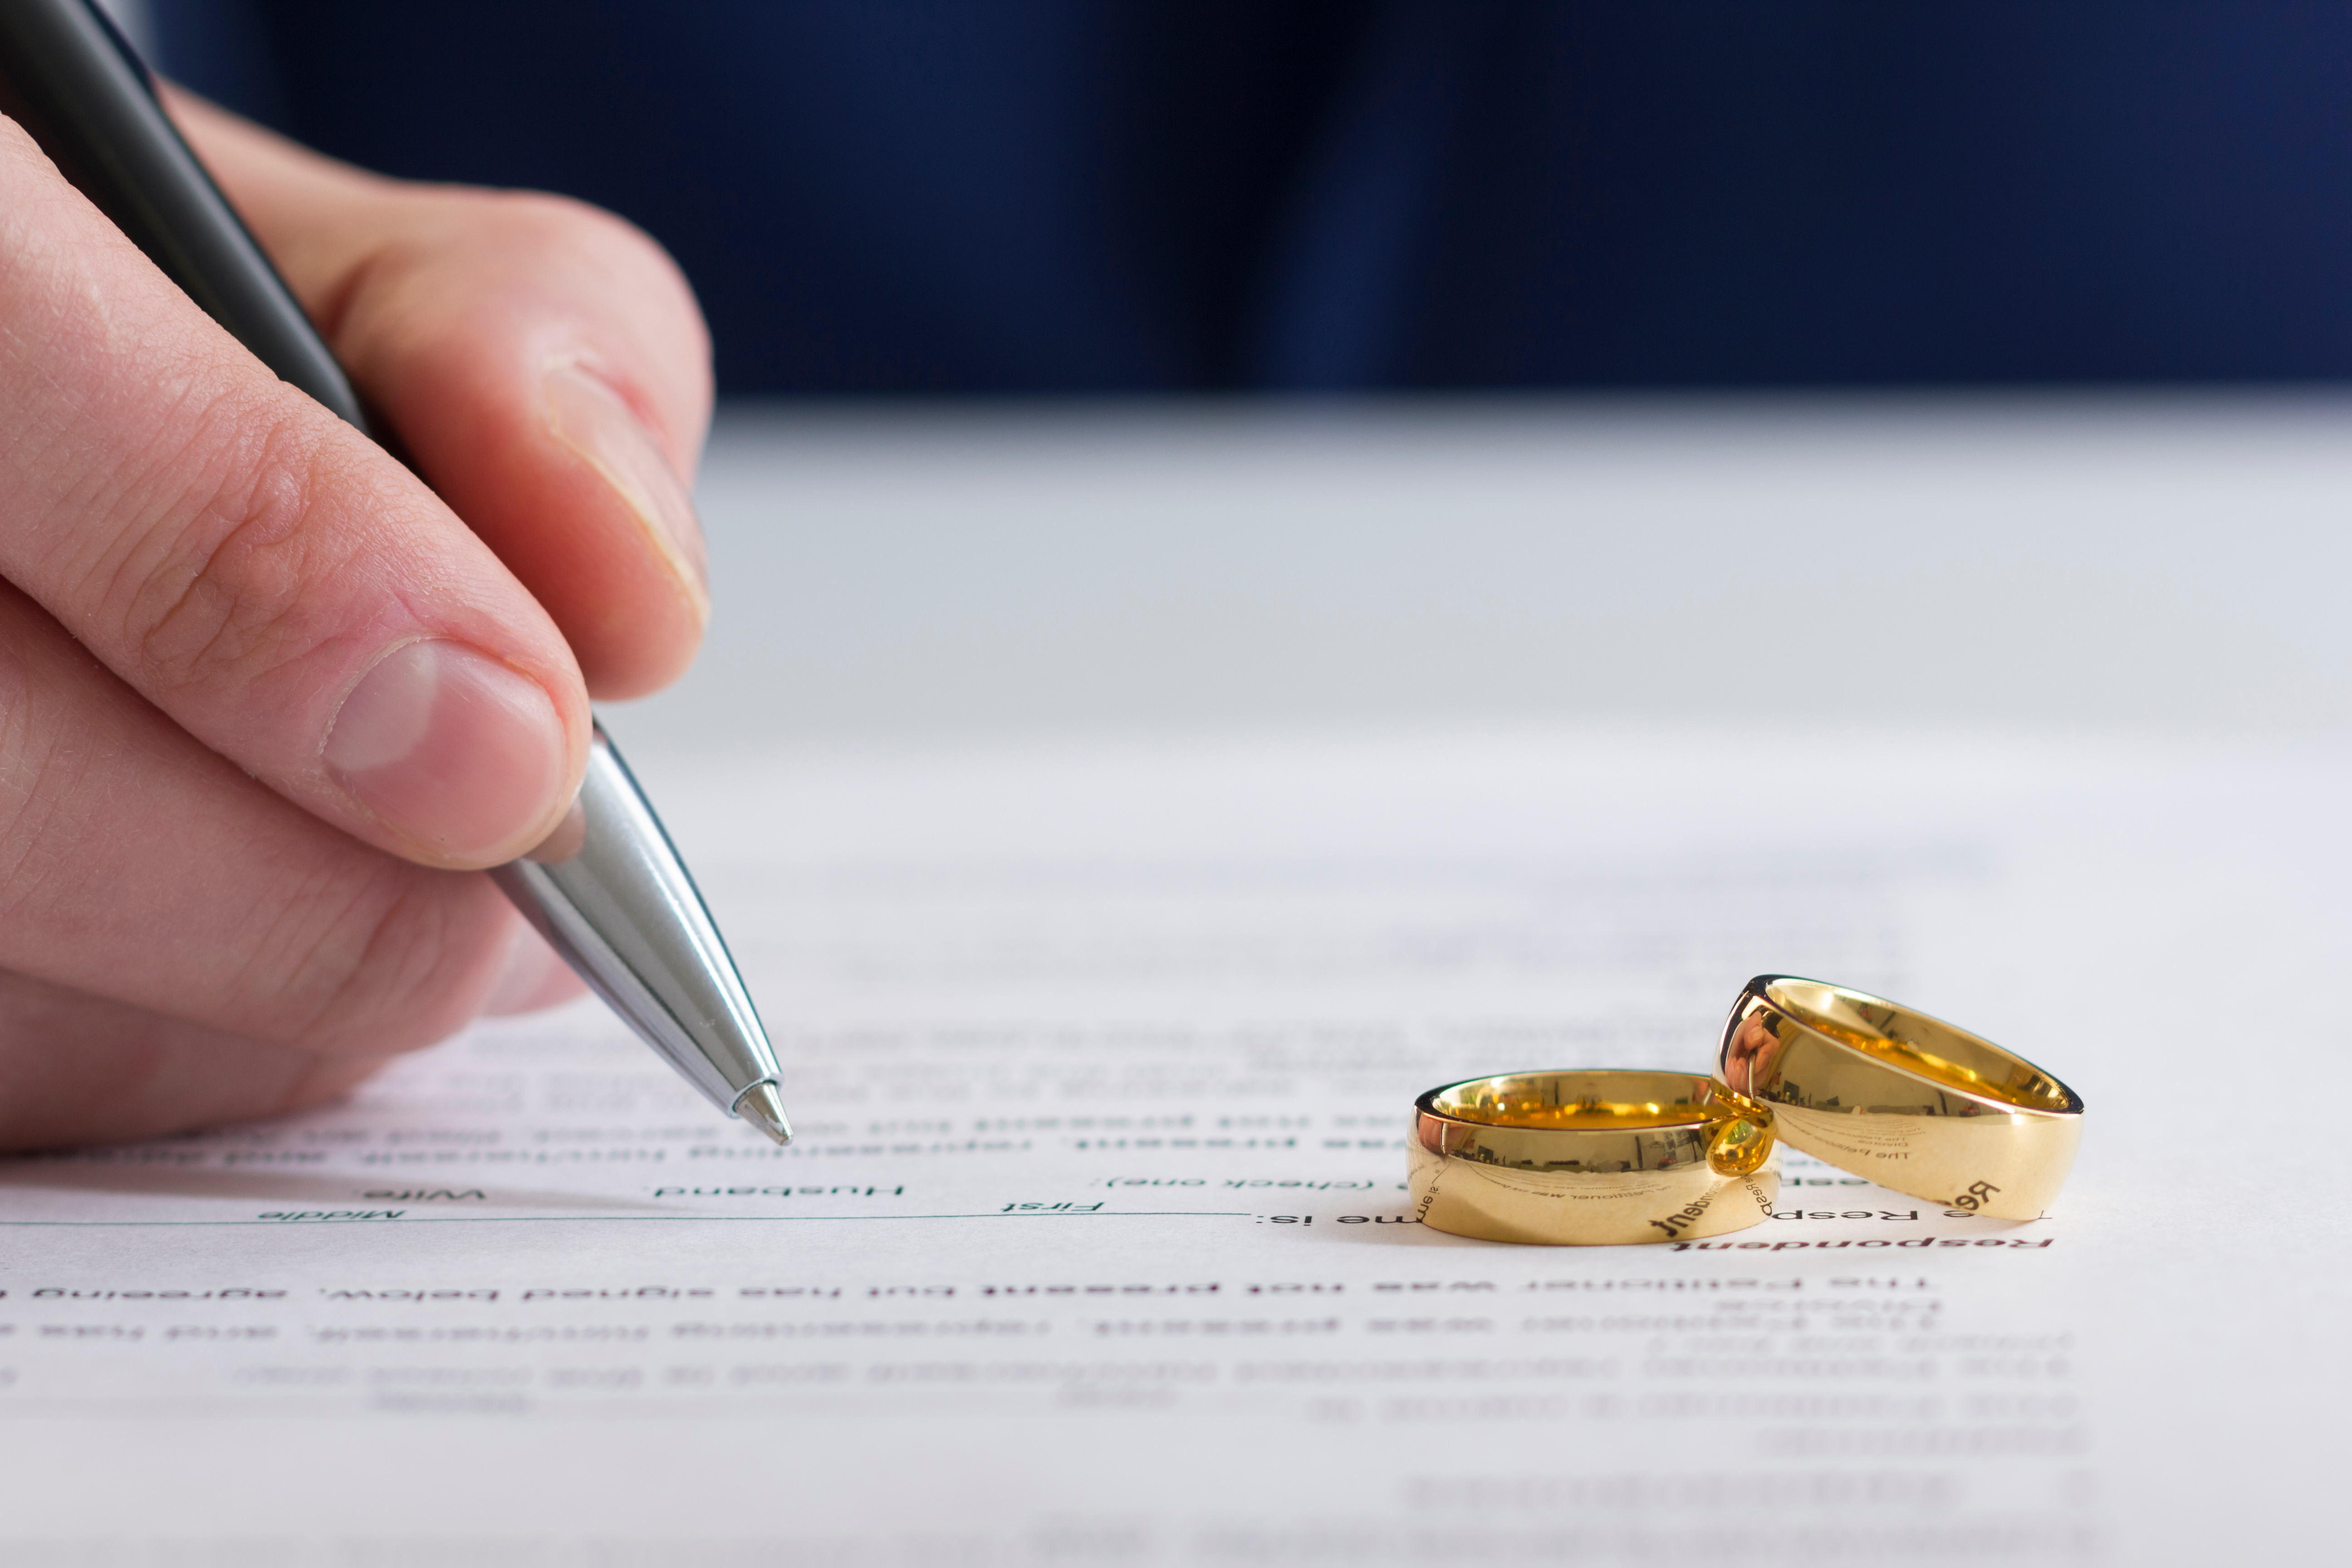 Eine Person, die Scheidungspapiere unterschreibt, während zwei Goldringe in der Nähe liegen | Quelle: Shutterstock